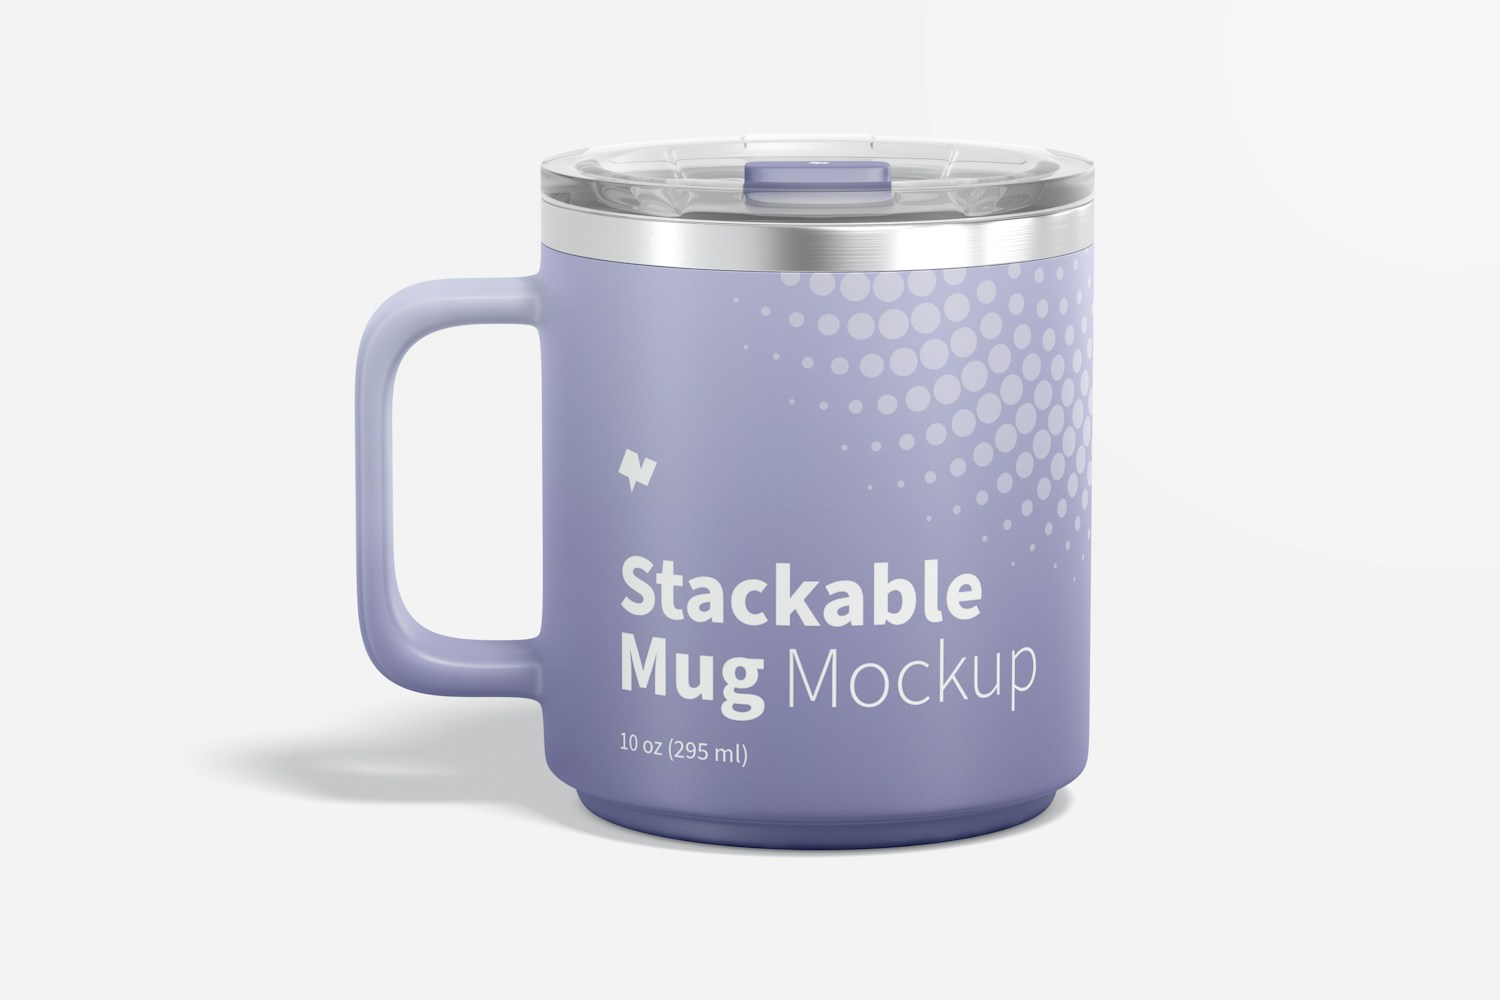 10 oz Stackable Mug Mockup, Front View